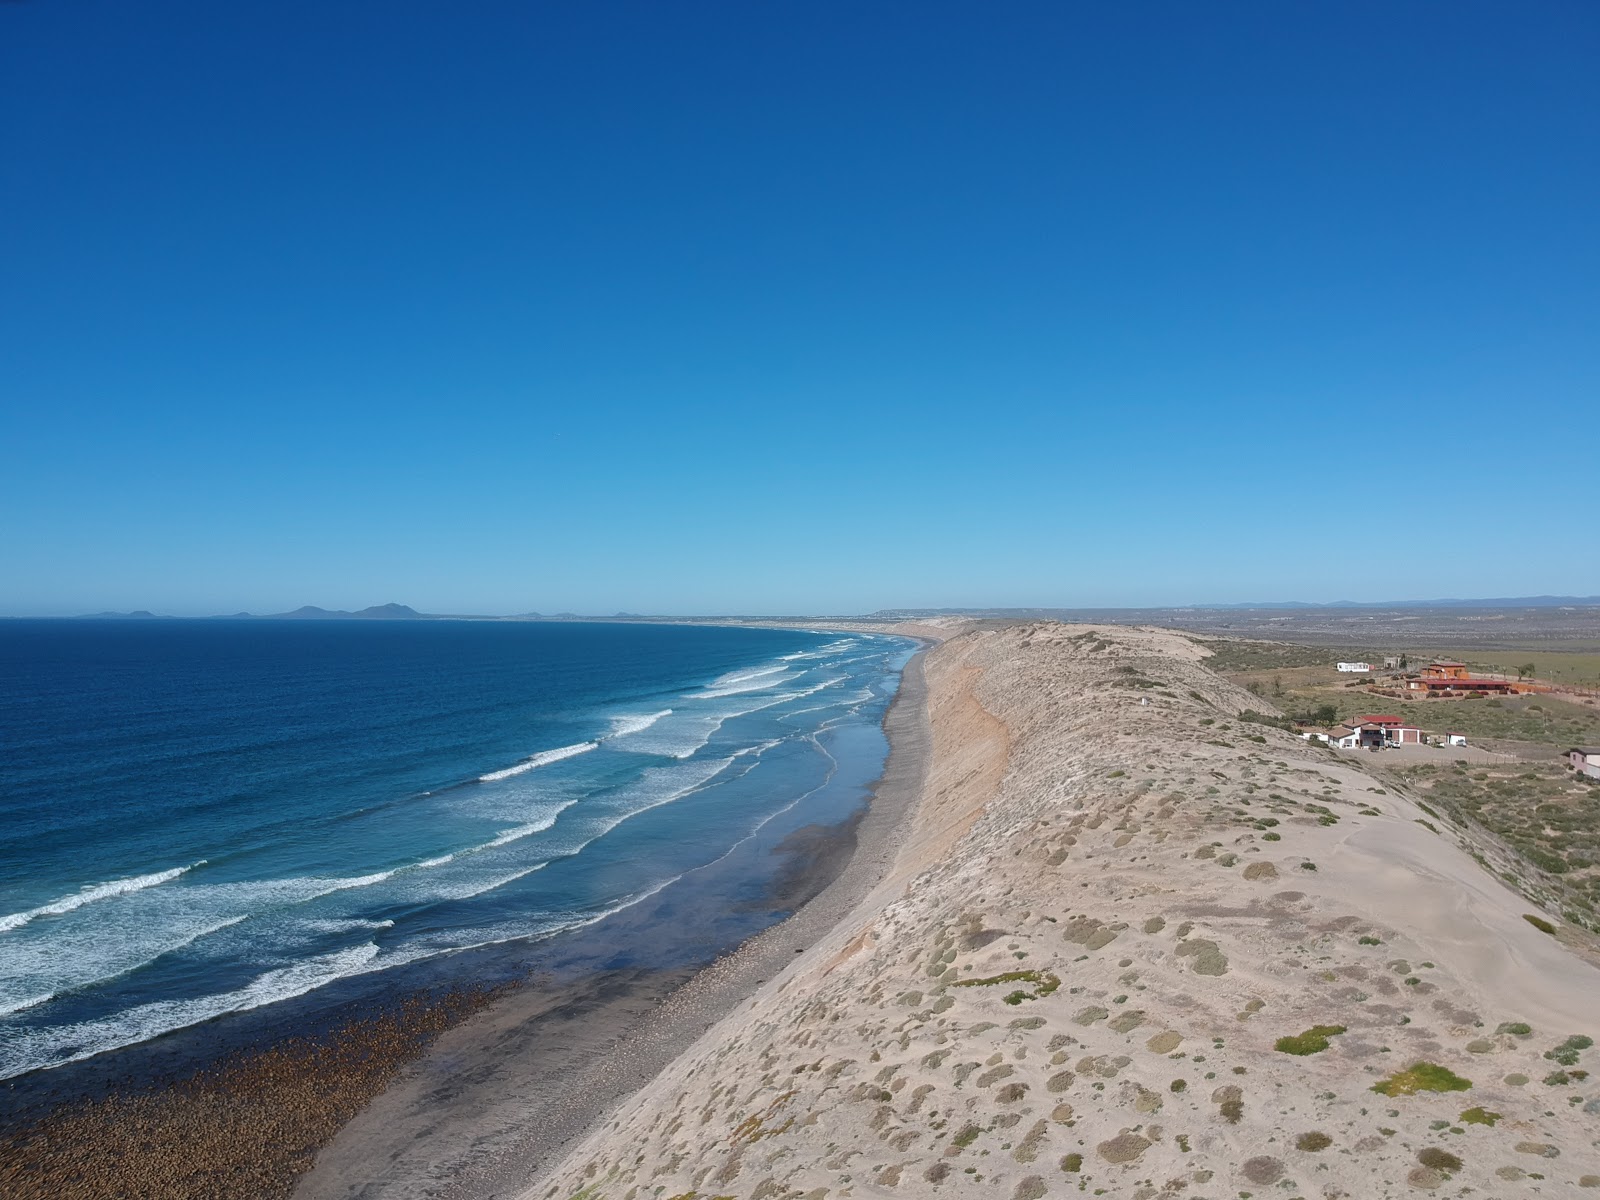 Playa El Socorrito'in fotoğrafı geniş plaj ile birlikte